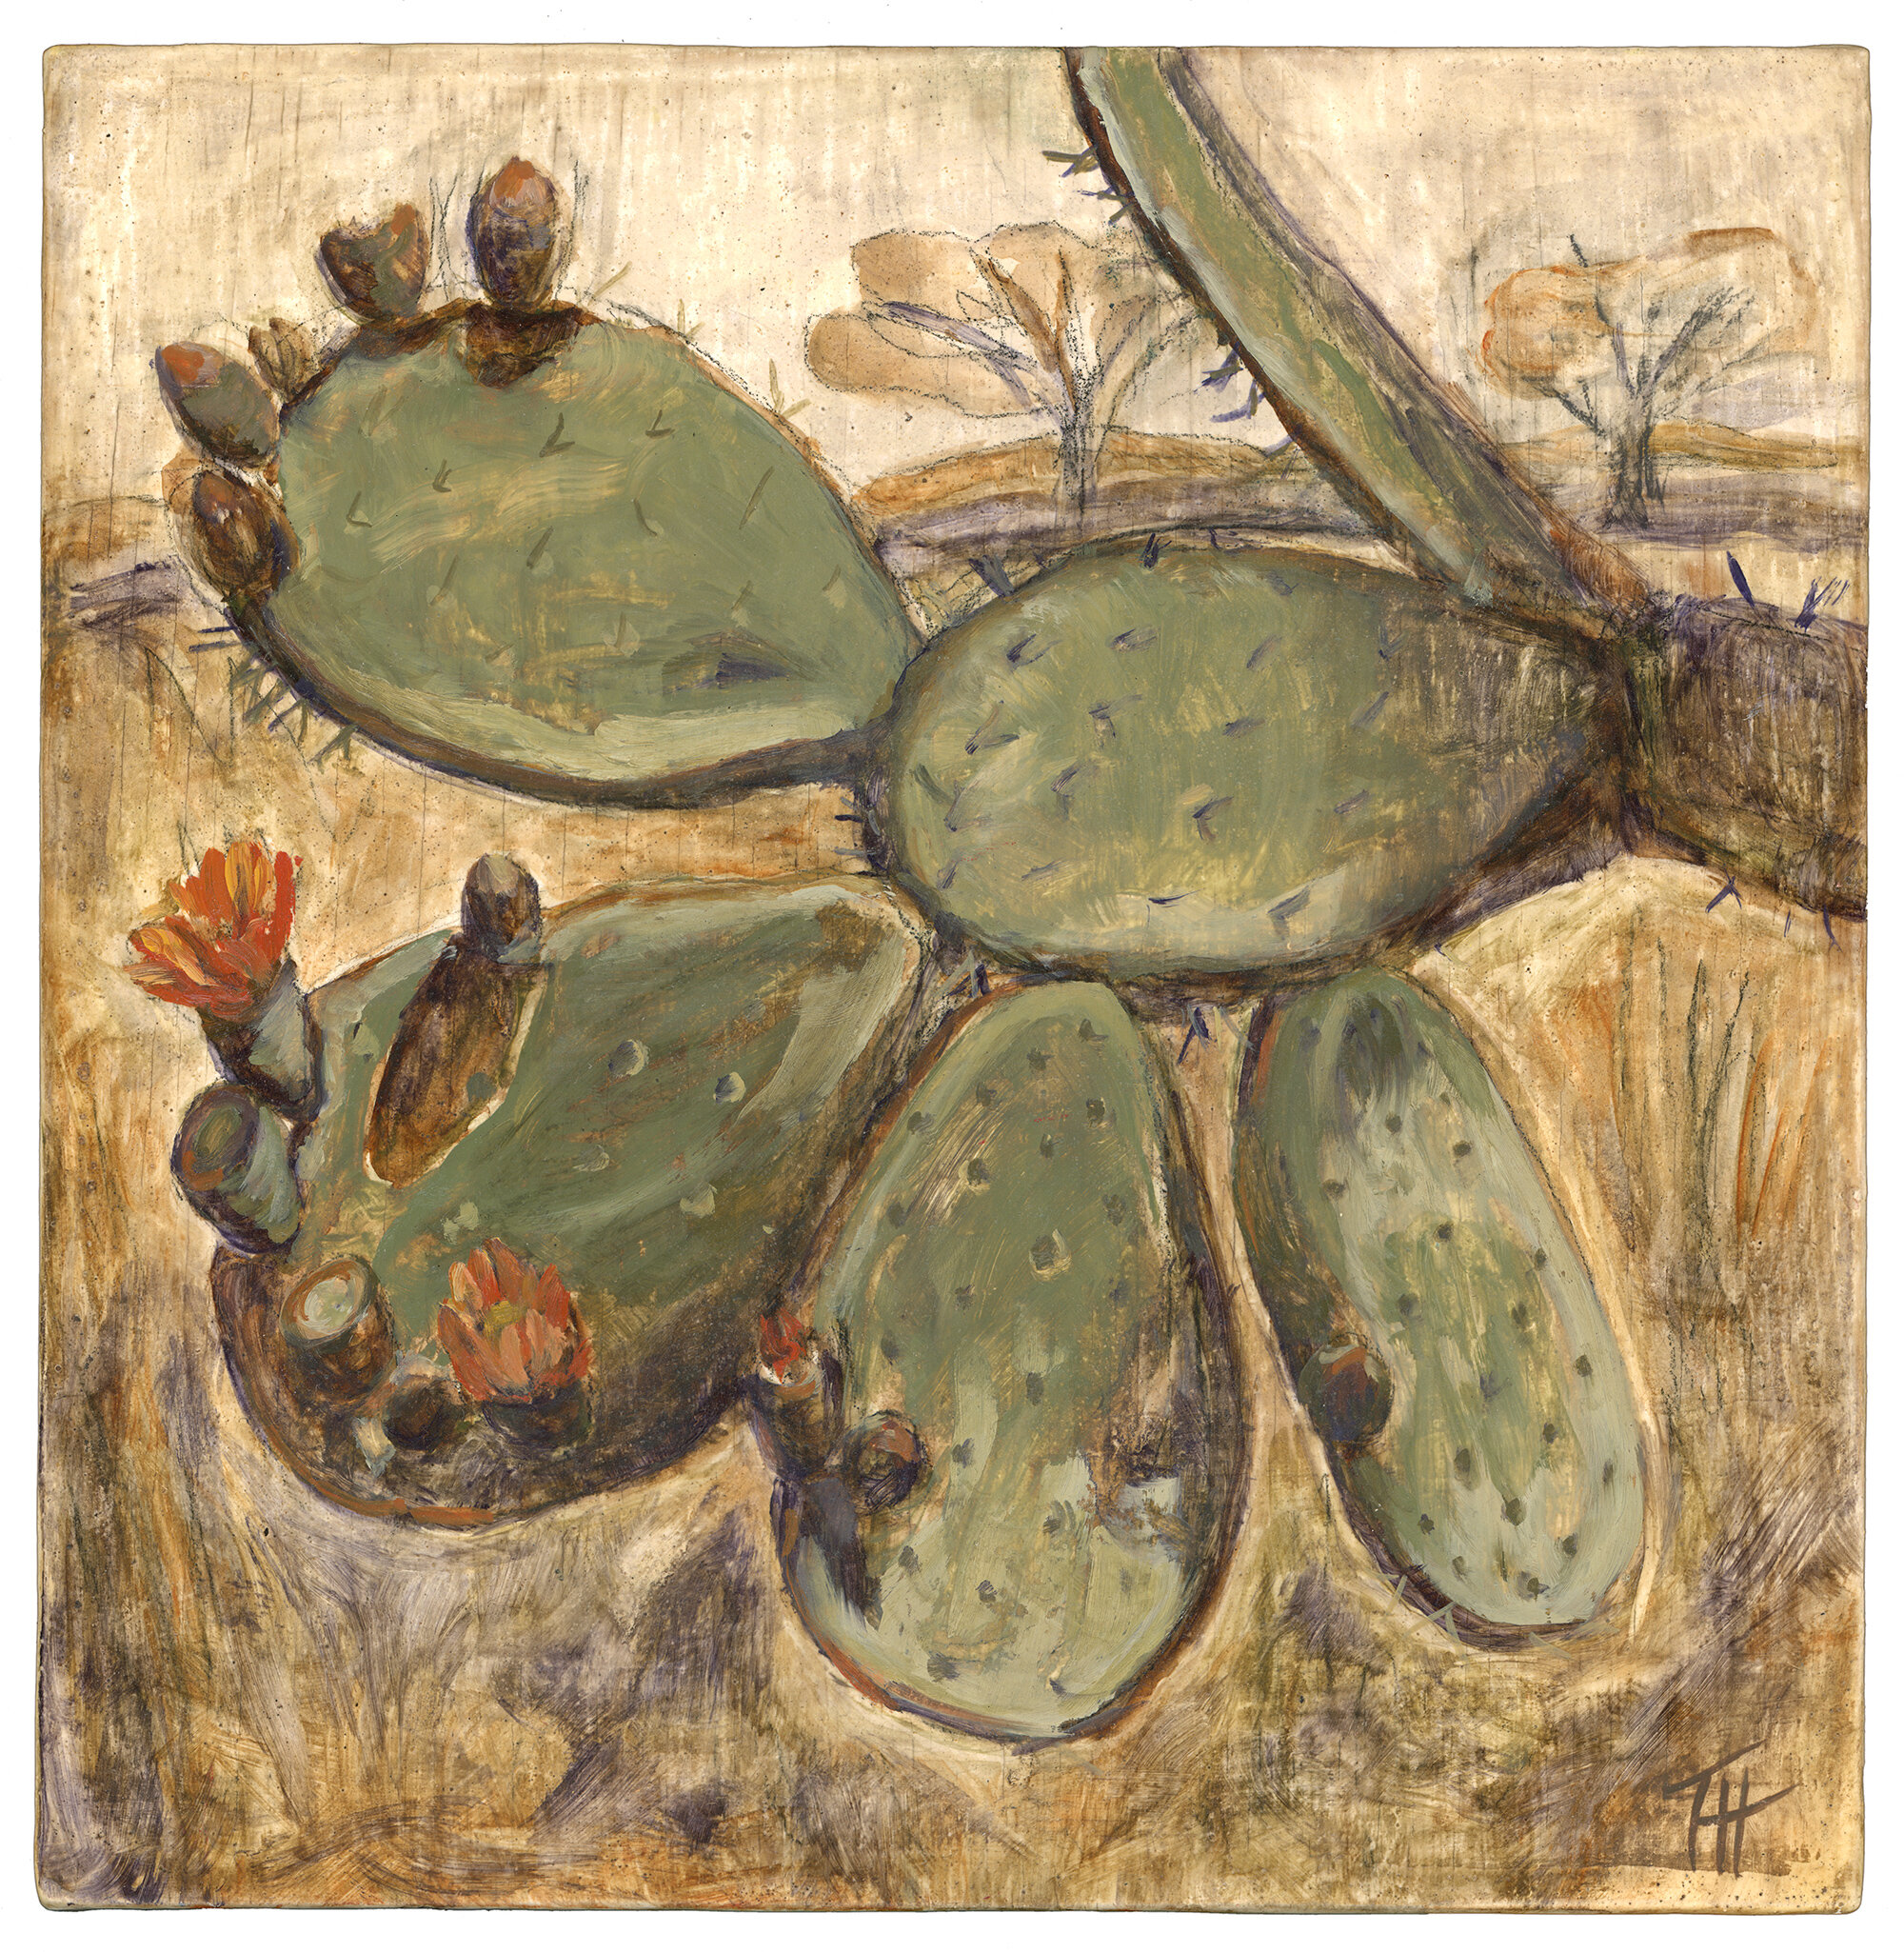  Mexican Cactus (1), 2019. 10x10 in. Oil on wood, en plein air.  